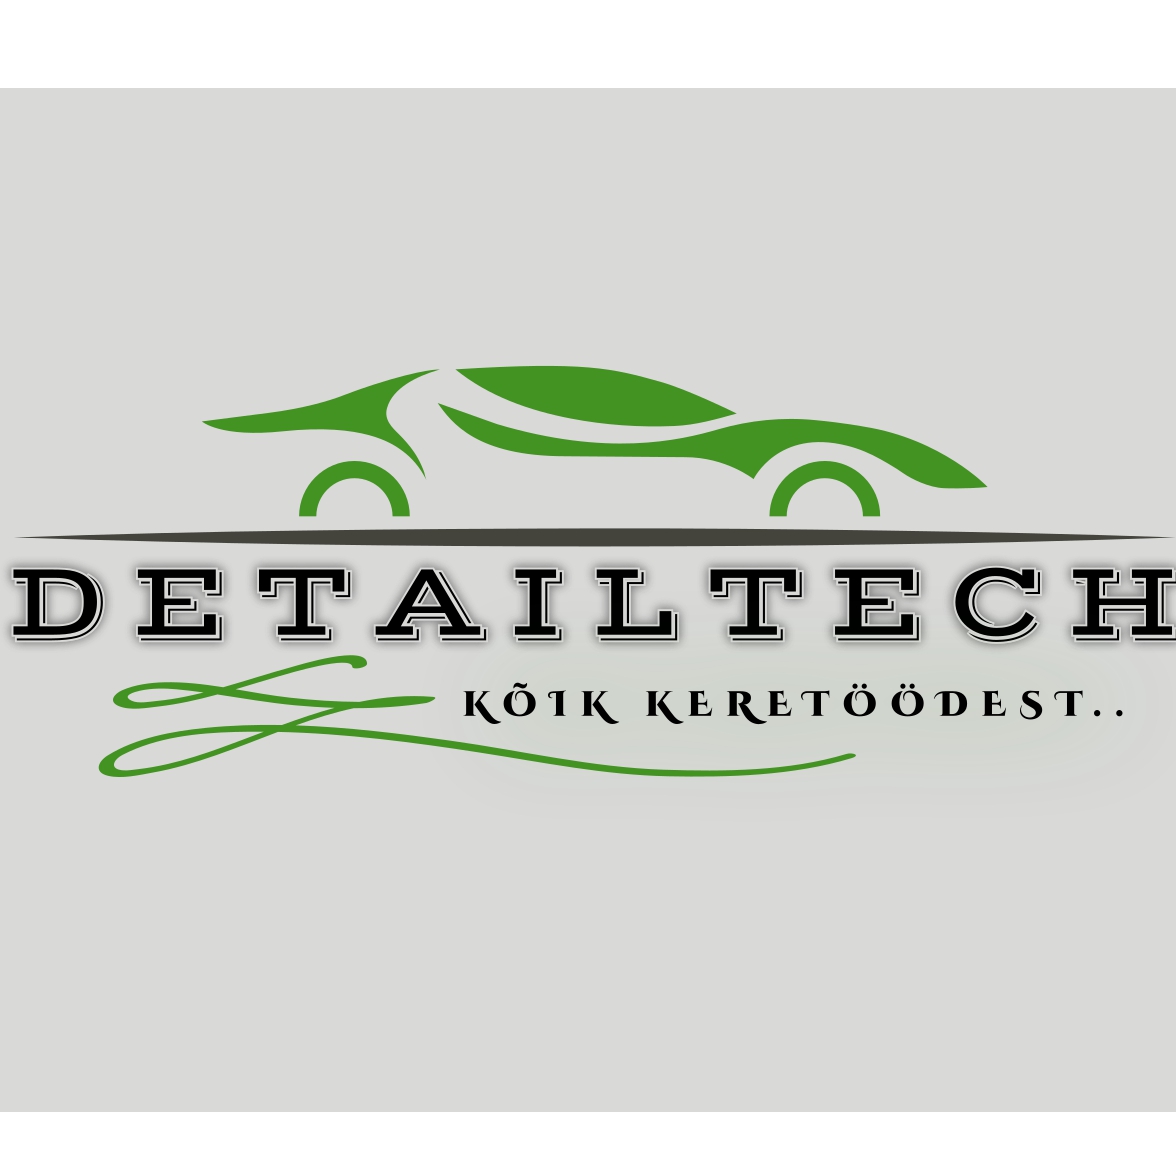 DETAILTECH OÜ logo